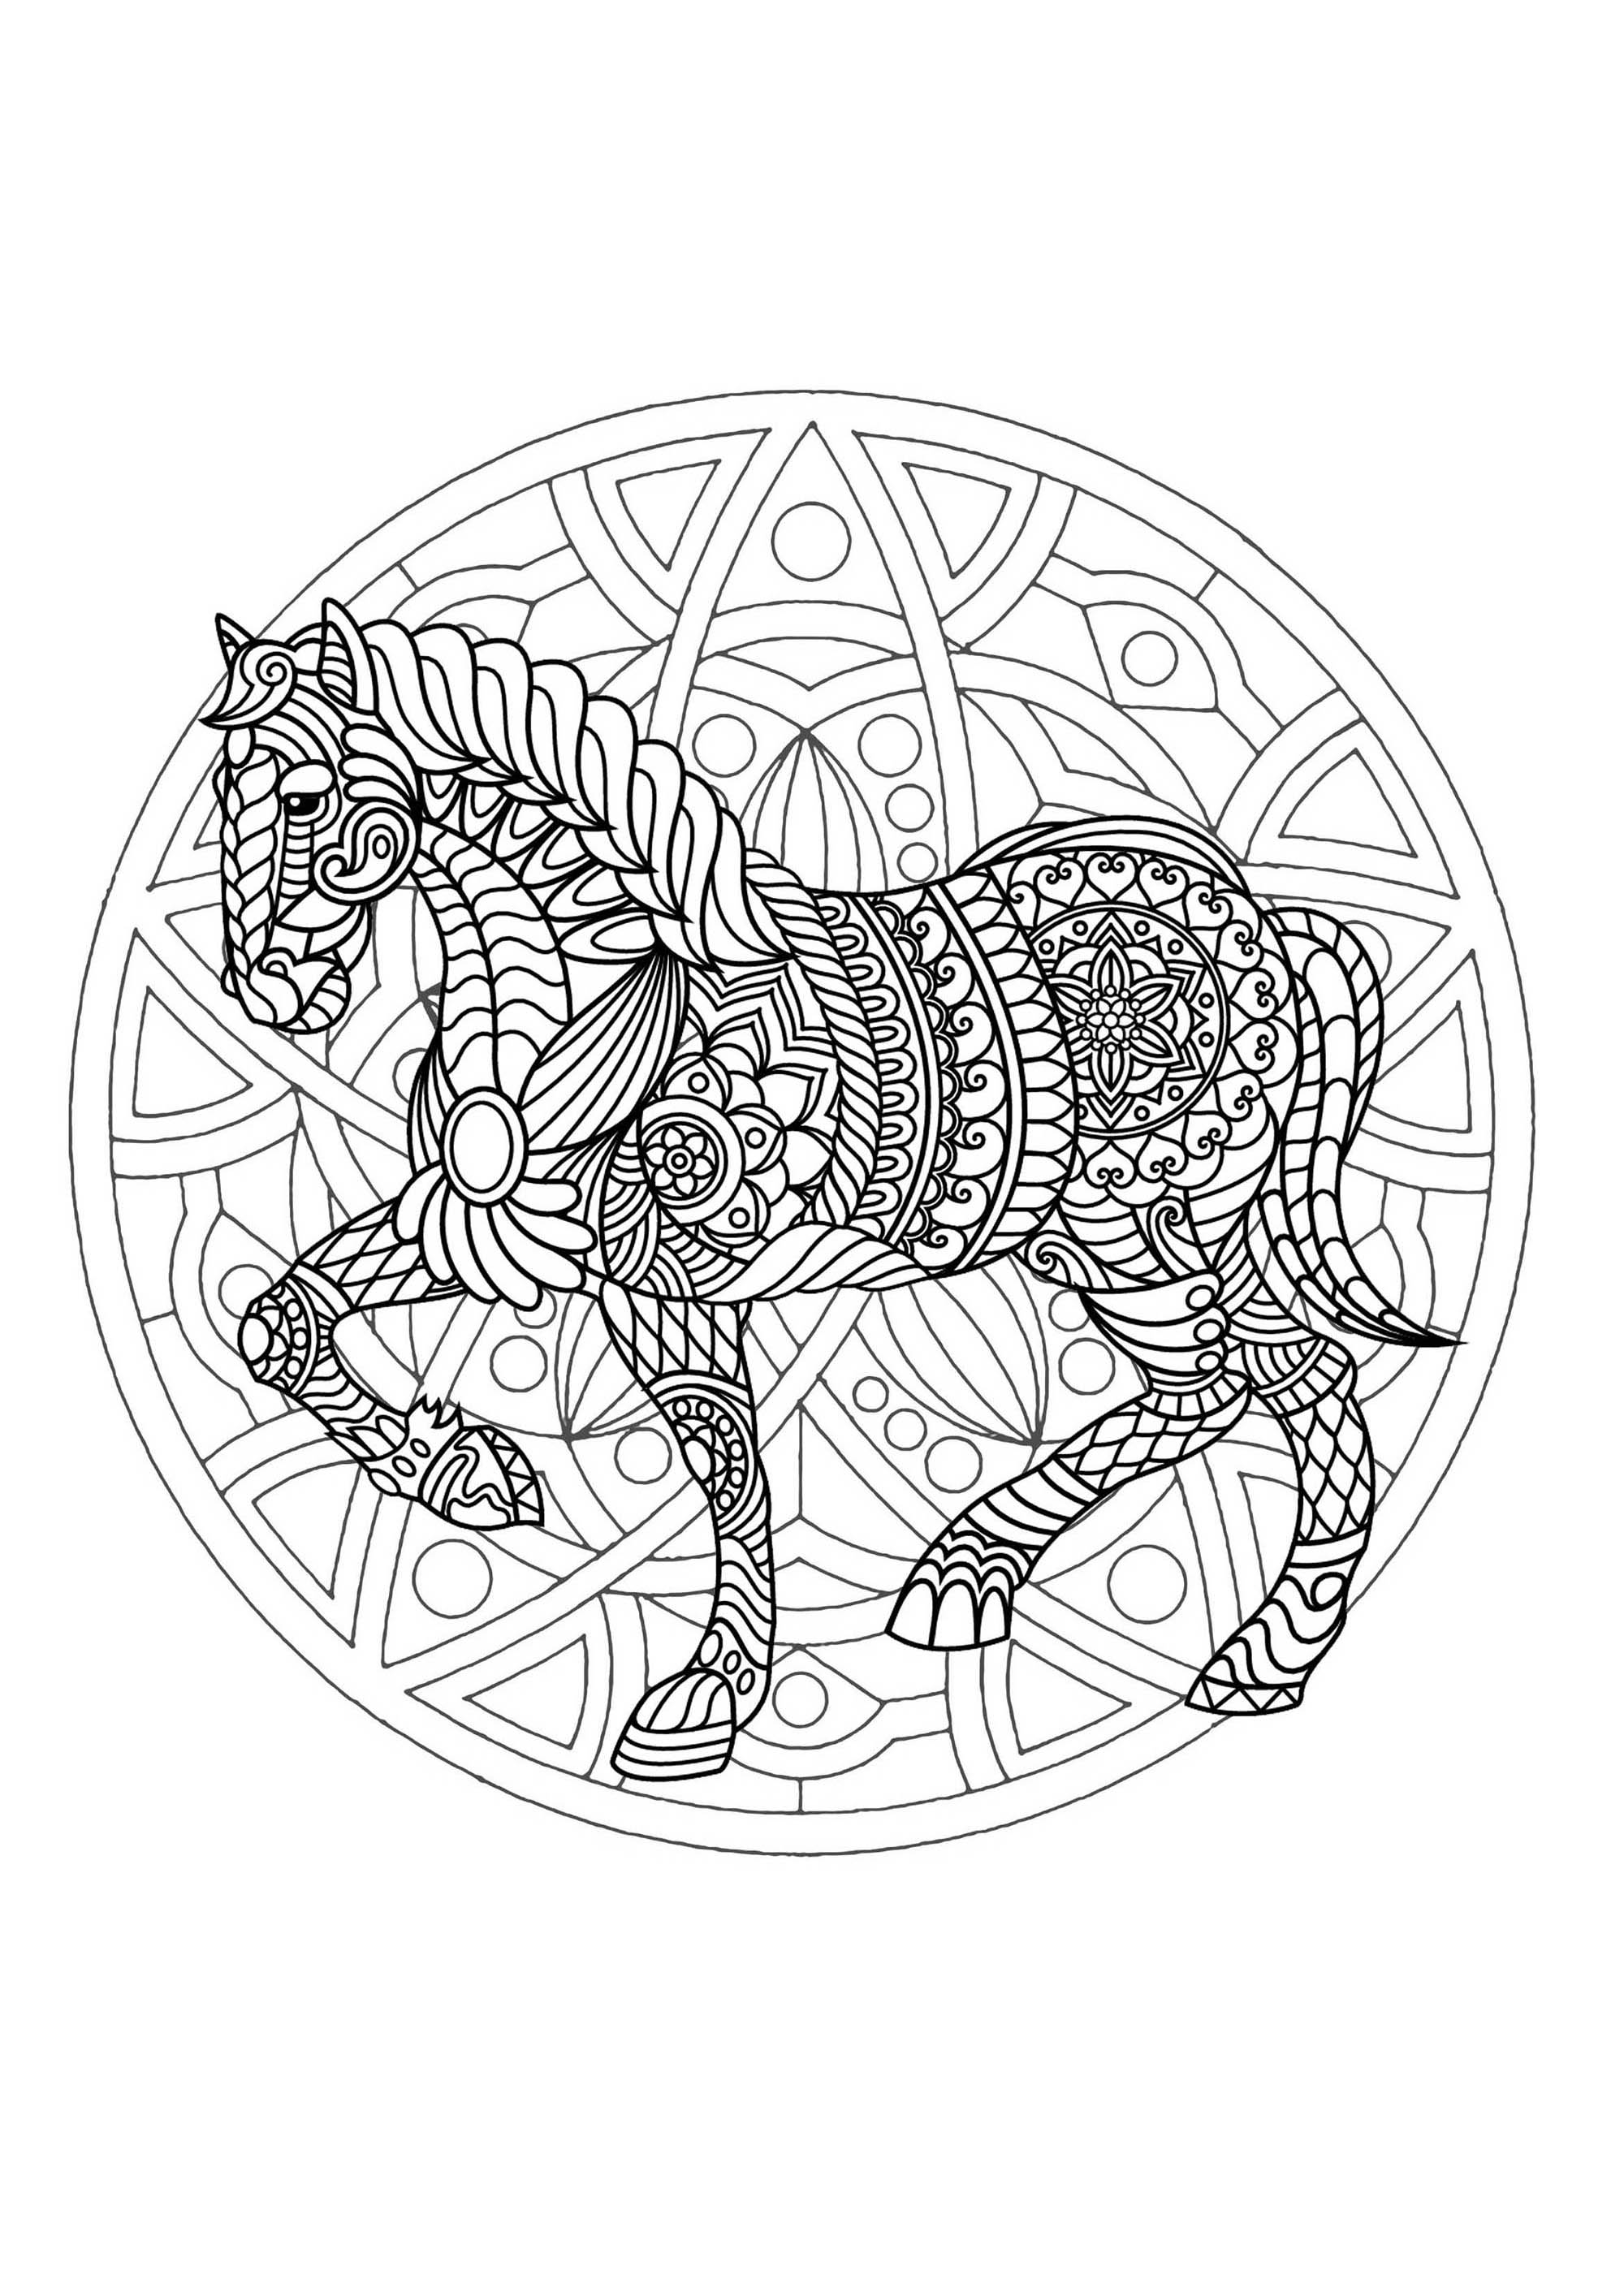 Mandala cheval 1 - Mandalas - Coloriages difficiles pour adultes